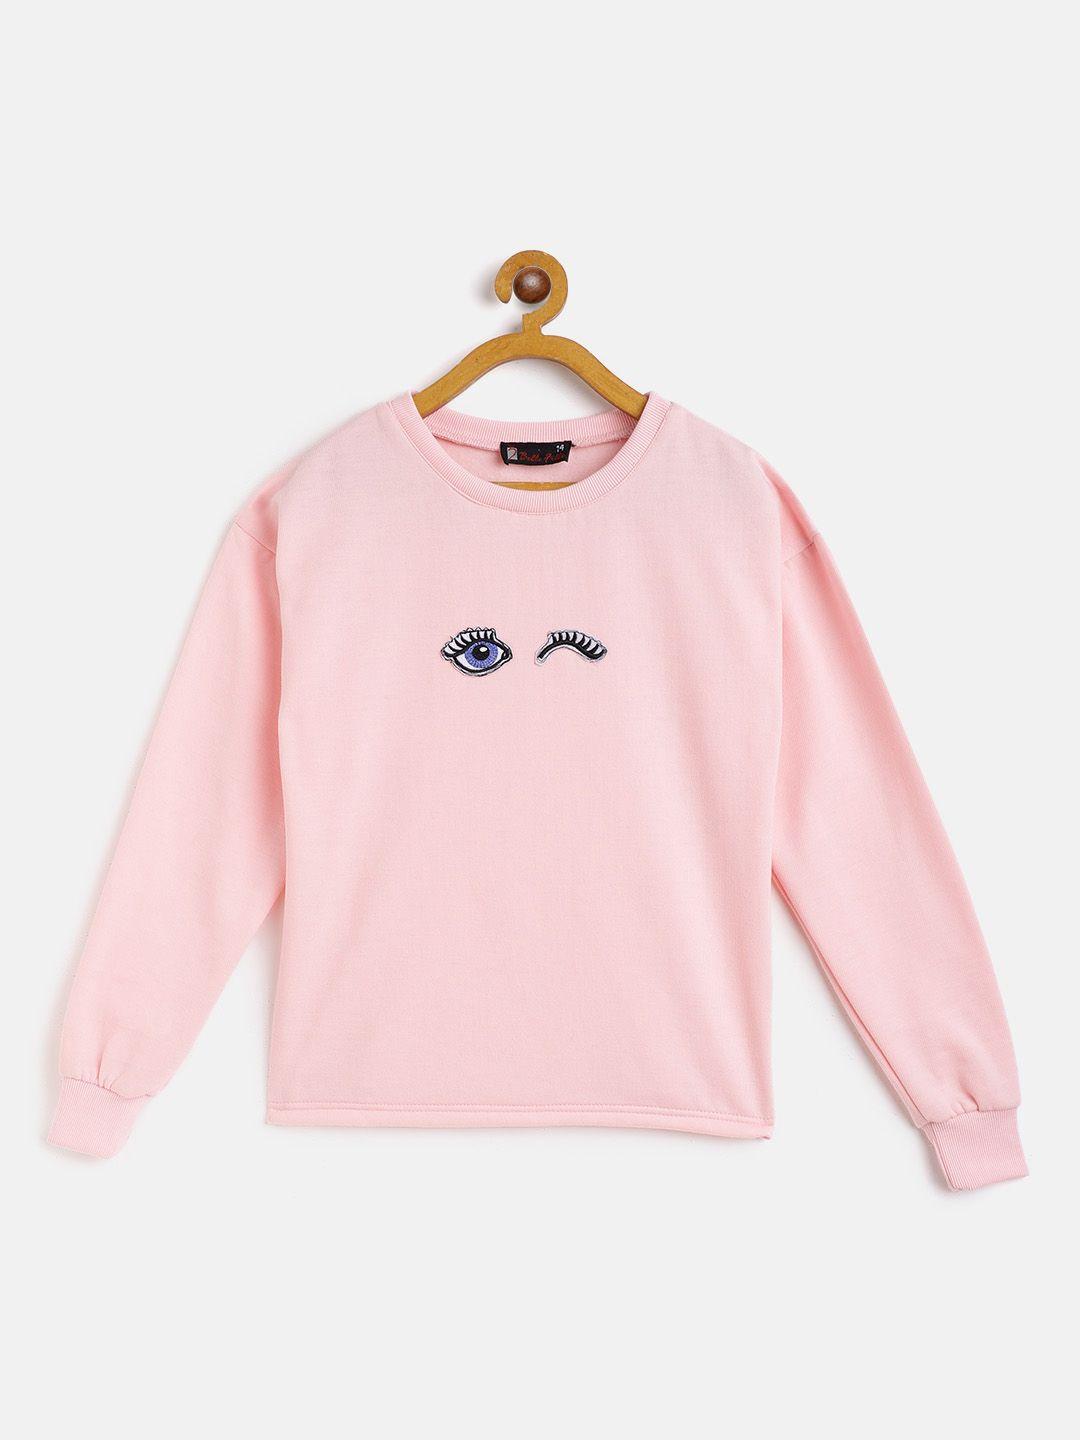 belle fille kids pink solid applique round neck sweatshirt